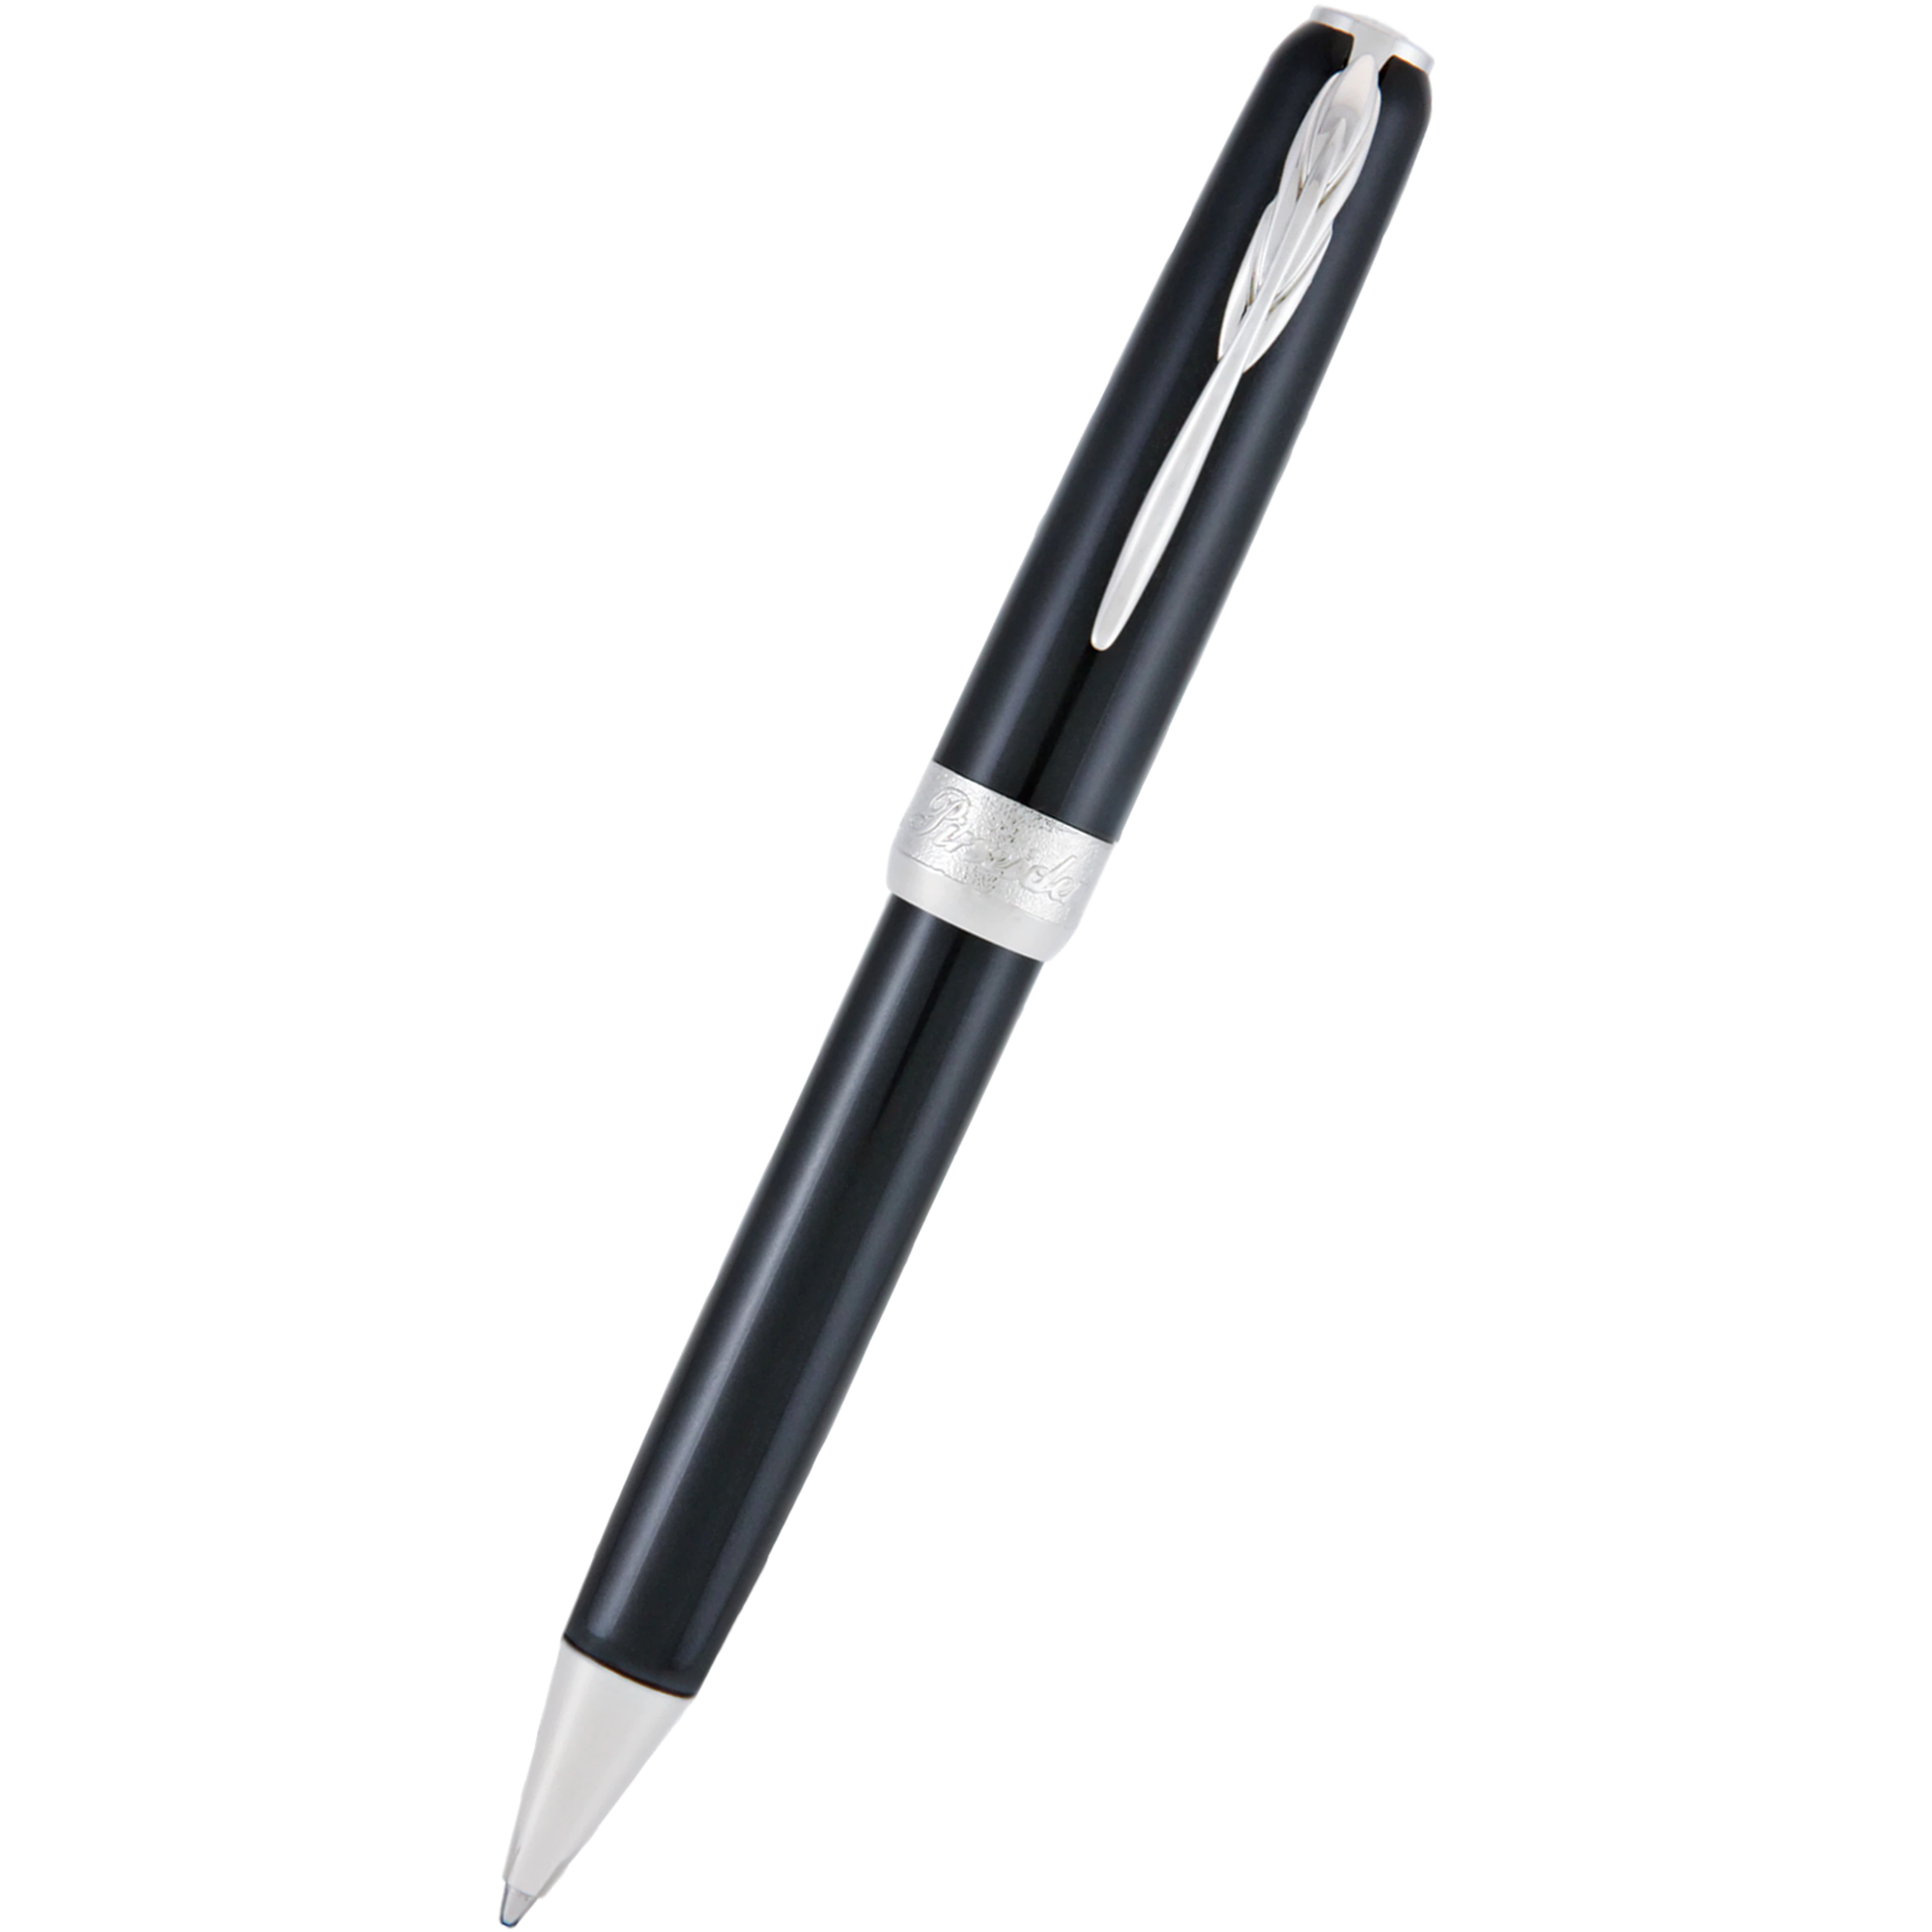 Pineider Full Metal Jacket Ballpoint Pen - Midnight Black-Pen Boutique Ltd